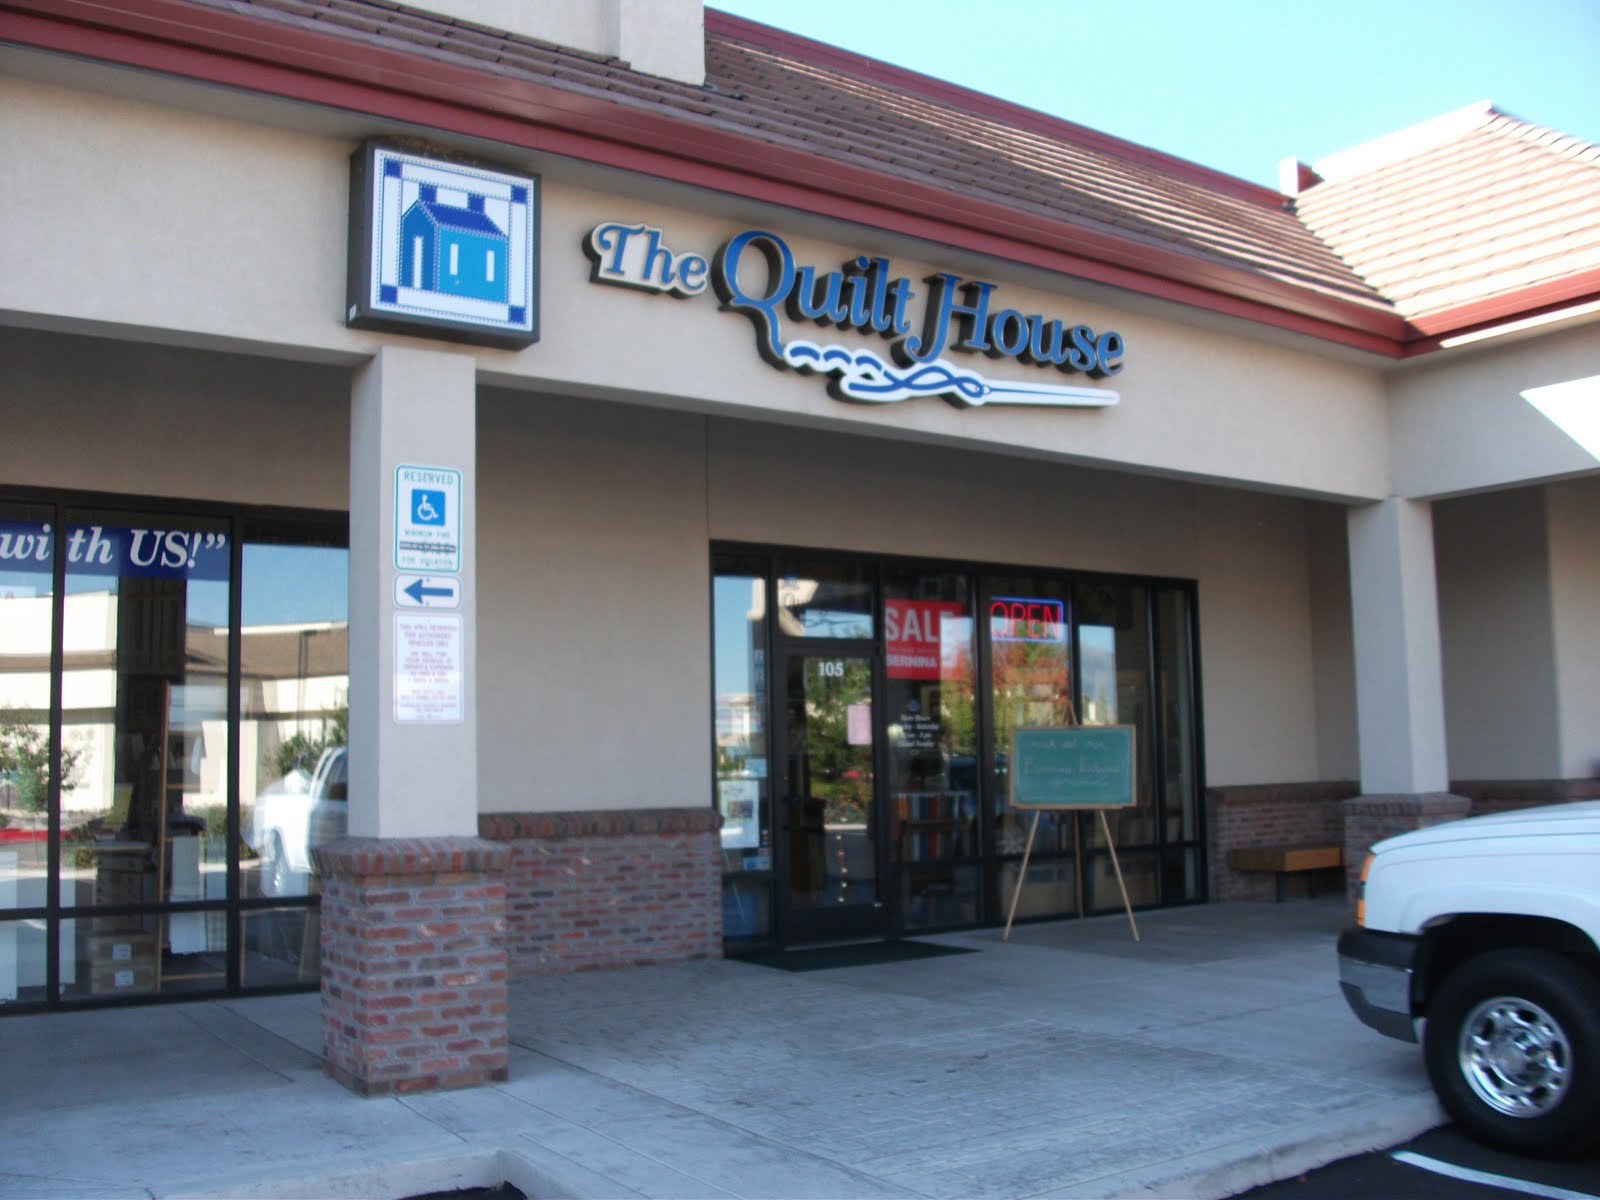 Cozy Little Quilts: Lake Tahoe & The Quilt Shop